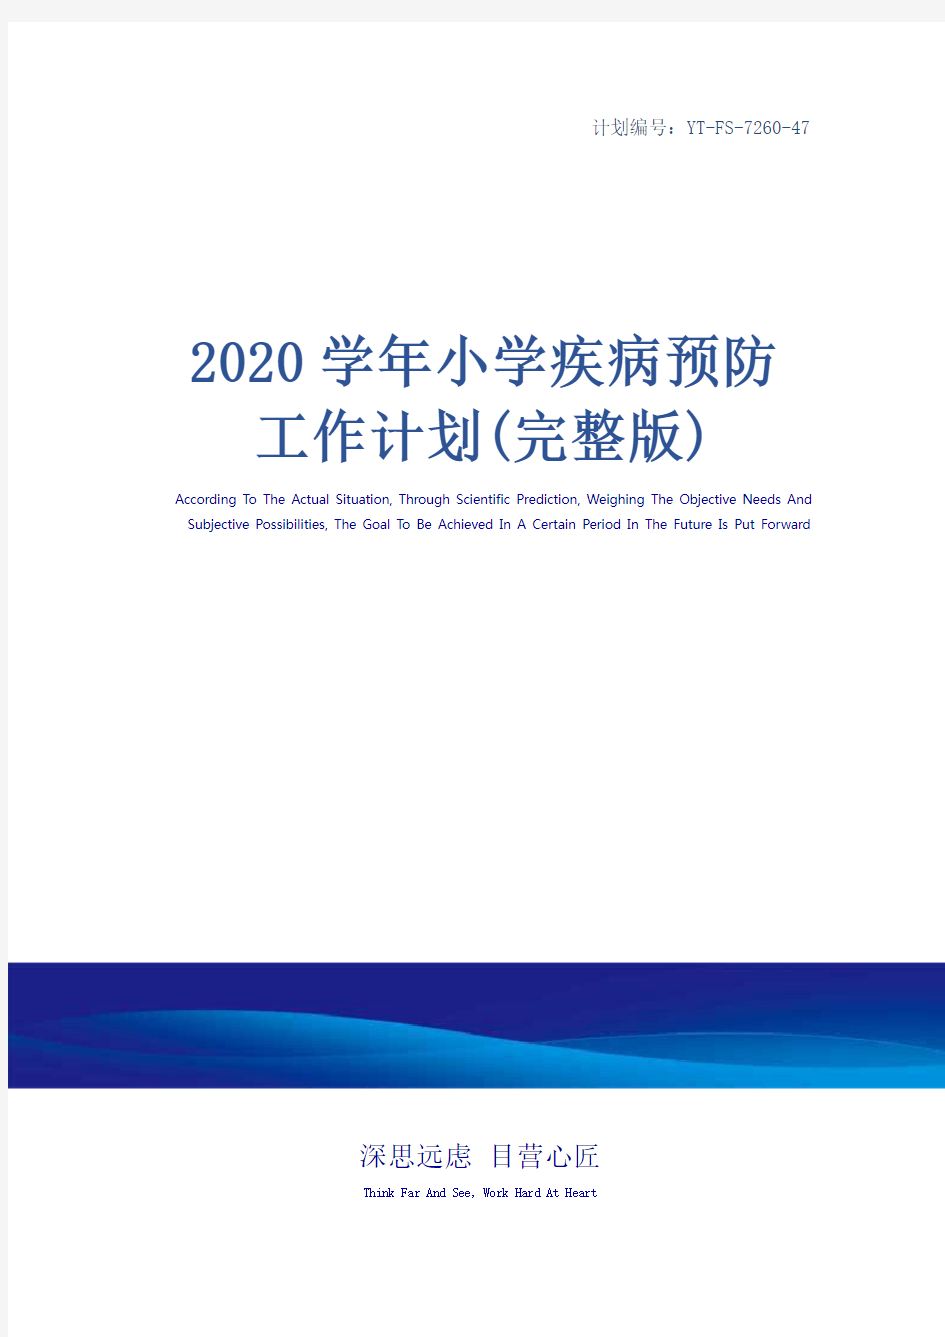 2020学年小学疾病预防工作计划(完整版)